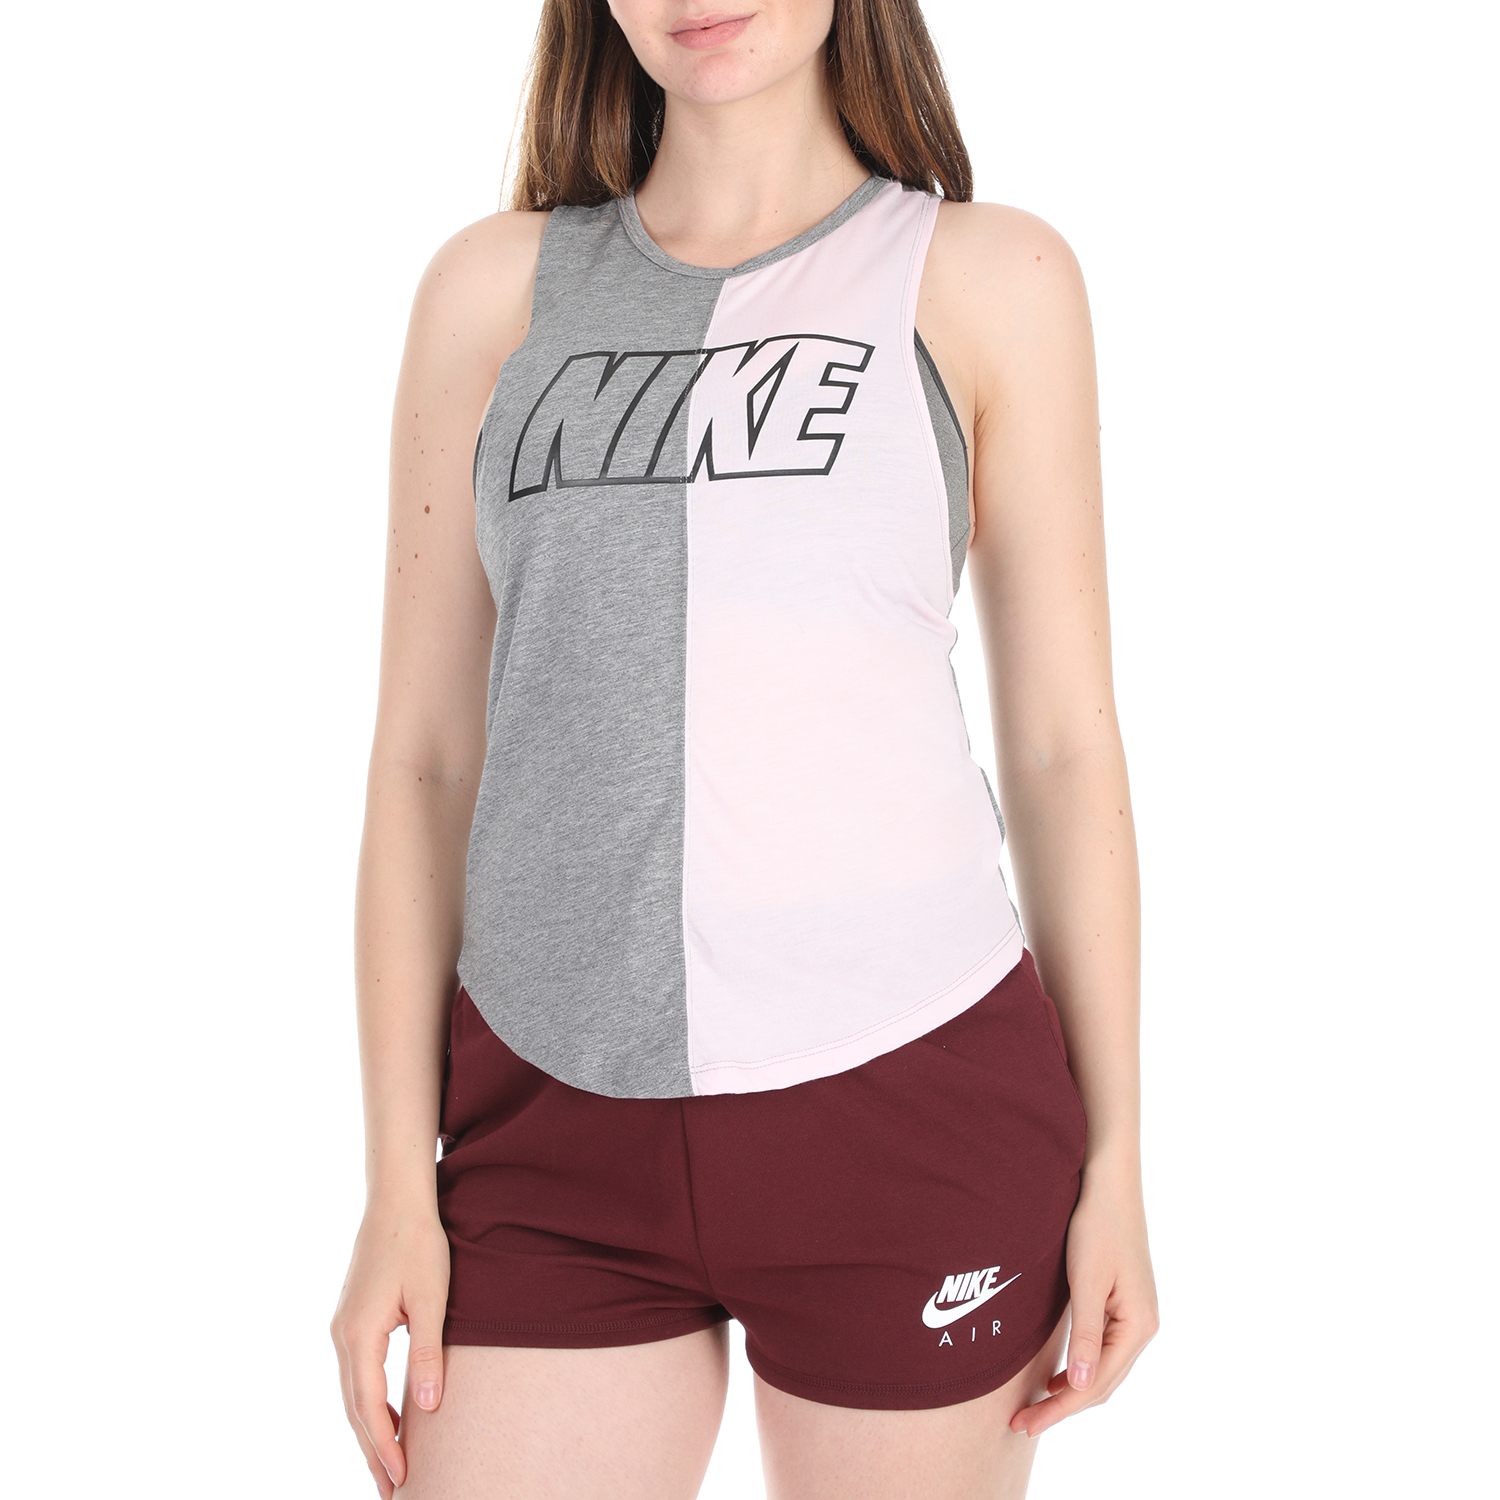 NIKE - Γυναικείο αθλητικό τοπ NIKE MILER λευκό γκρι Γυναικεία/Ρούχα/Αθλητικά/T-shirt-Τοπ